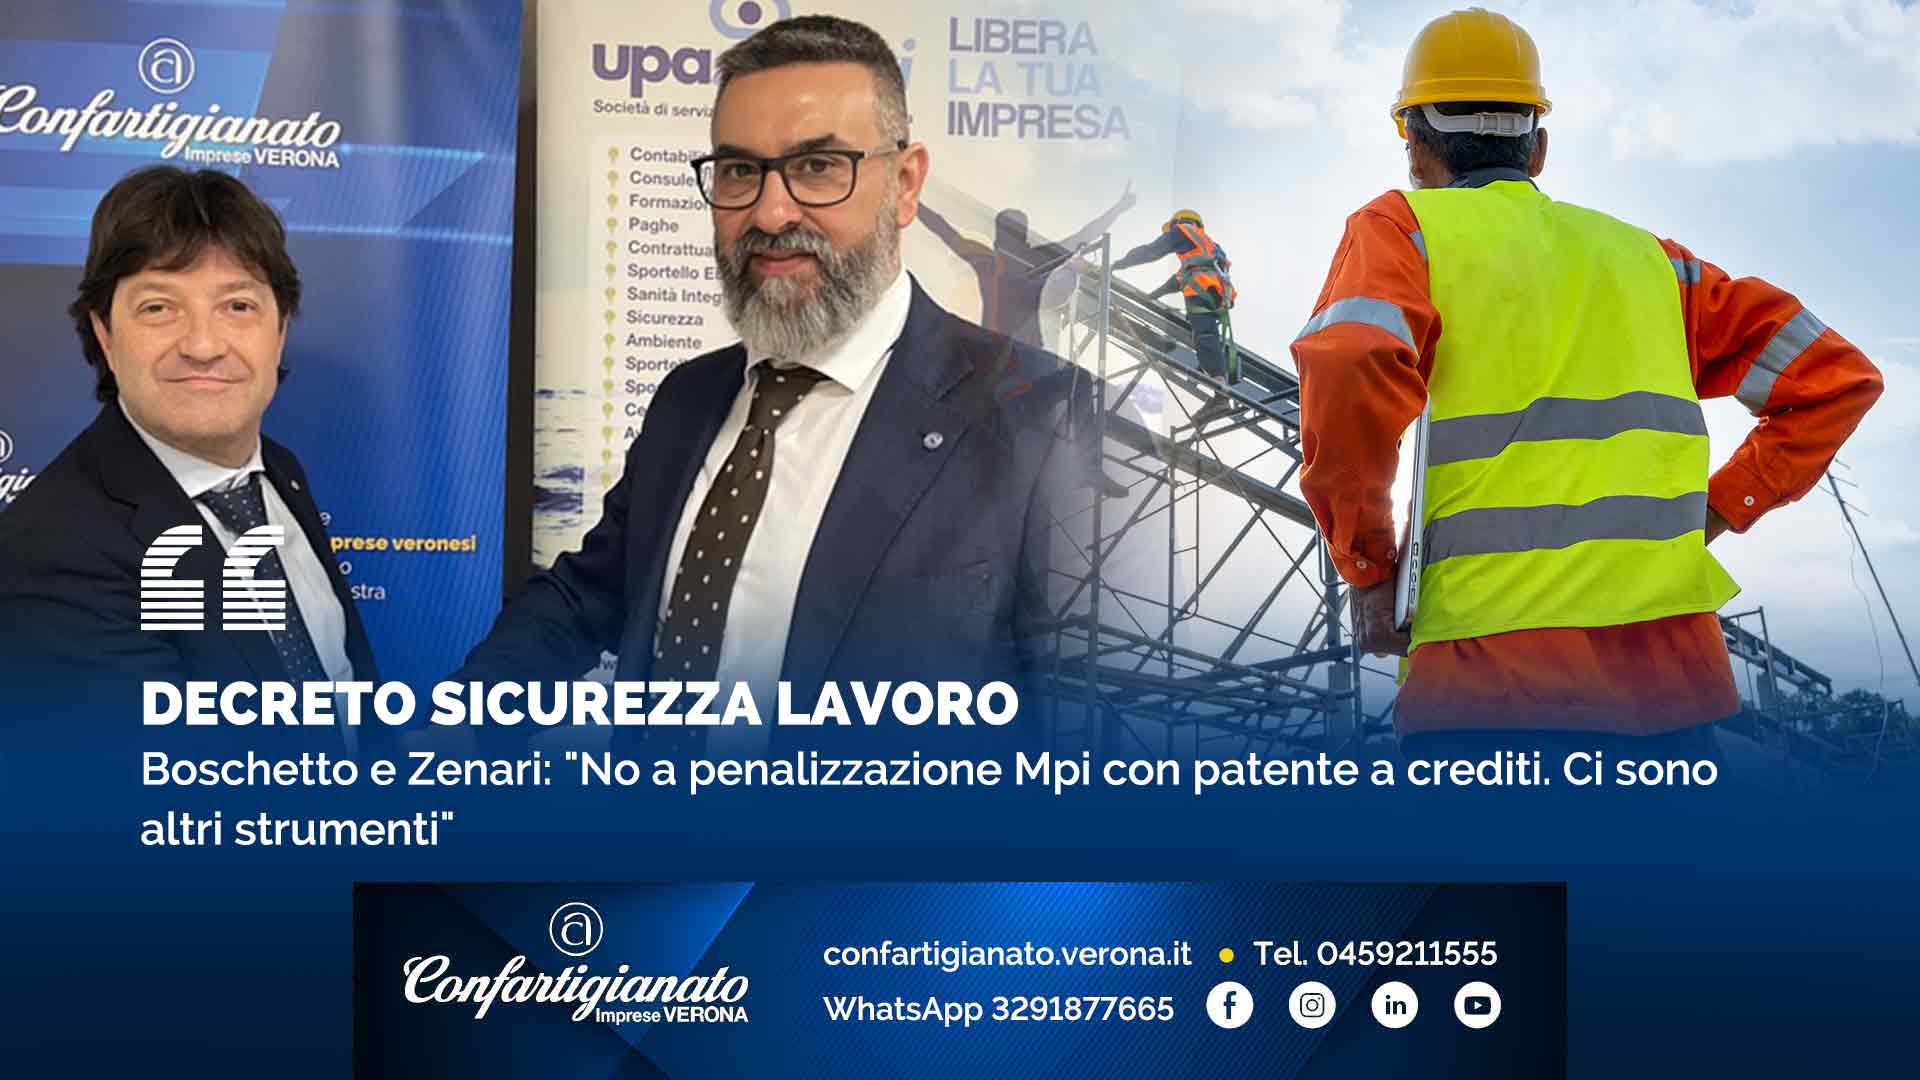 DECRETO SICUREZZA LAVORO – Boschetto e Zenari: "No a penalizzazione Mpi con patente a crediti. Ci sono altri strumenti"